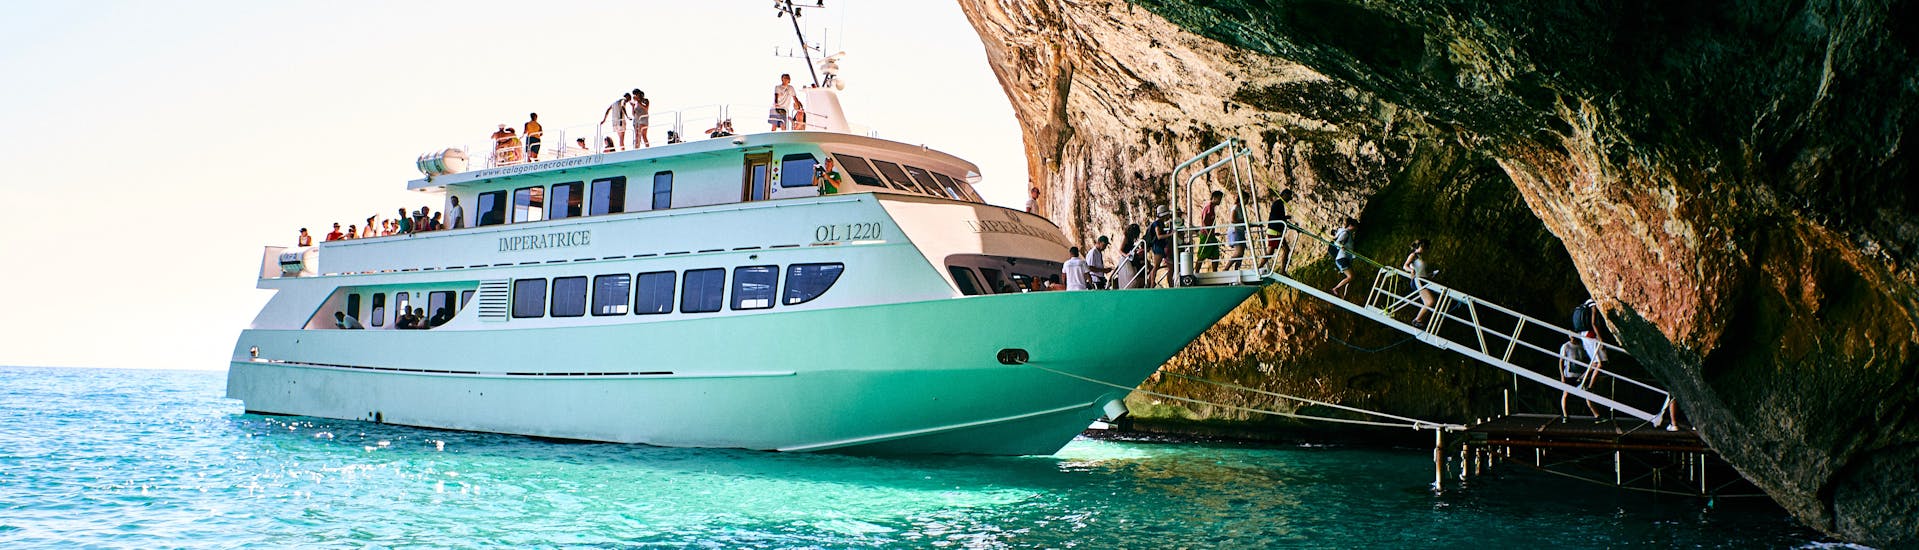 La lancha motora utilizada por Nuovo Consorzio Trasporti Marittimi desembarca en Grotta del Fico durante la excursión en barco de un día desde La Caletta al Golfo de Orosei con paradas para nadar.